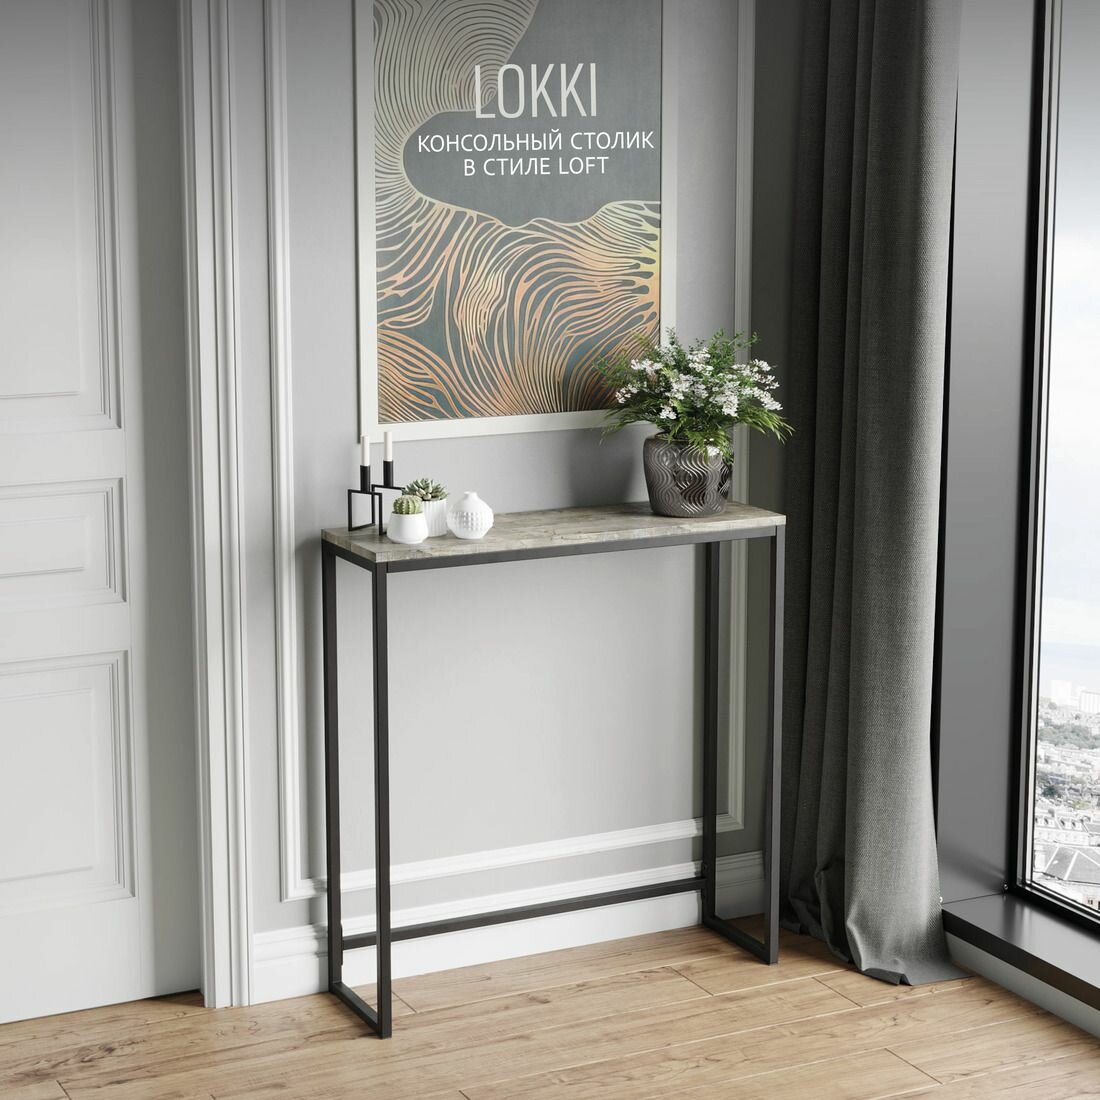 Консольный столик LOKKI loft коричневый приставной туалетный металлический деревянный 85x80x25 см 1 шт Гростат